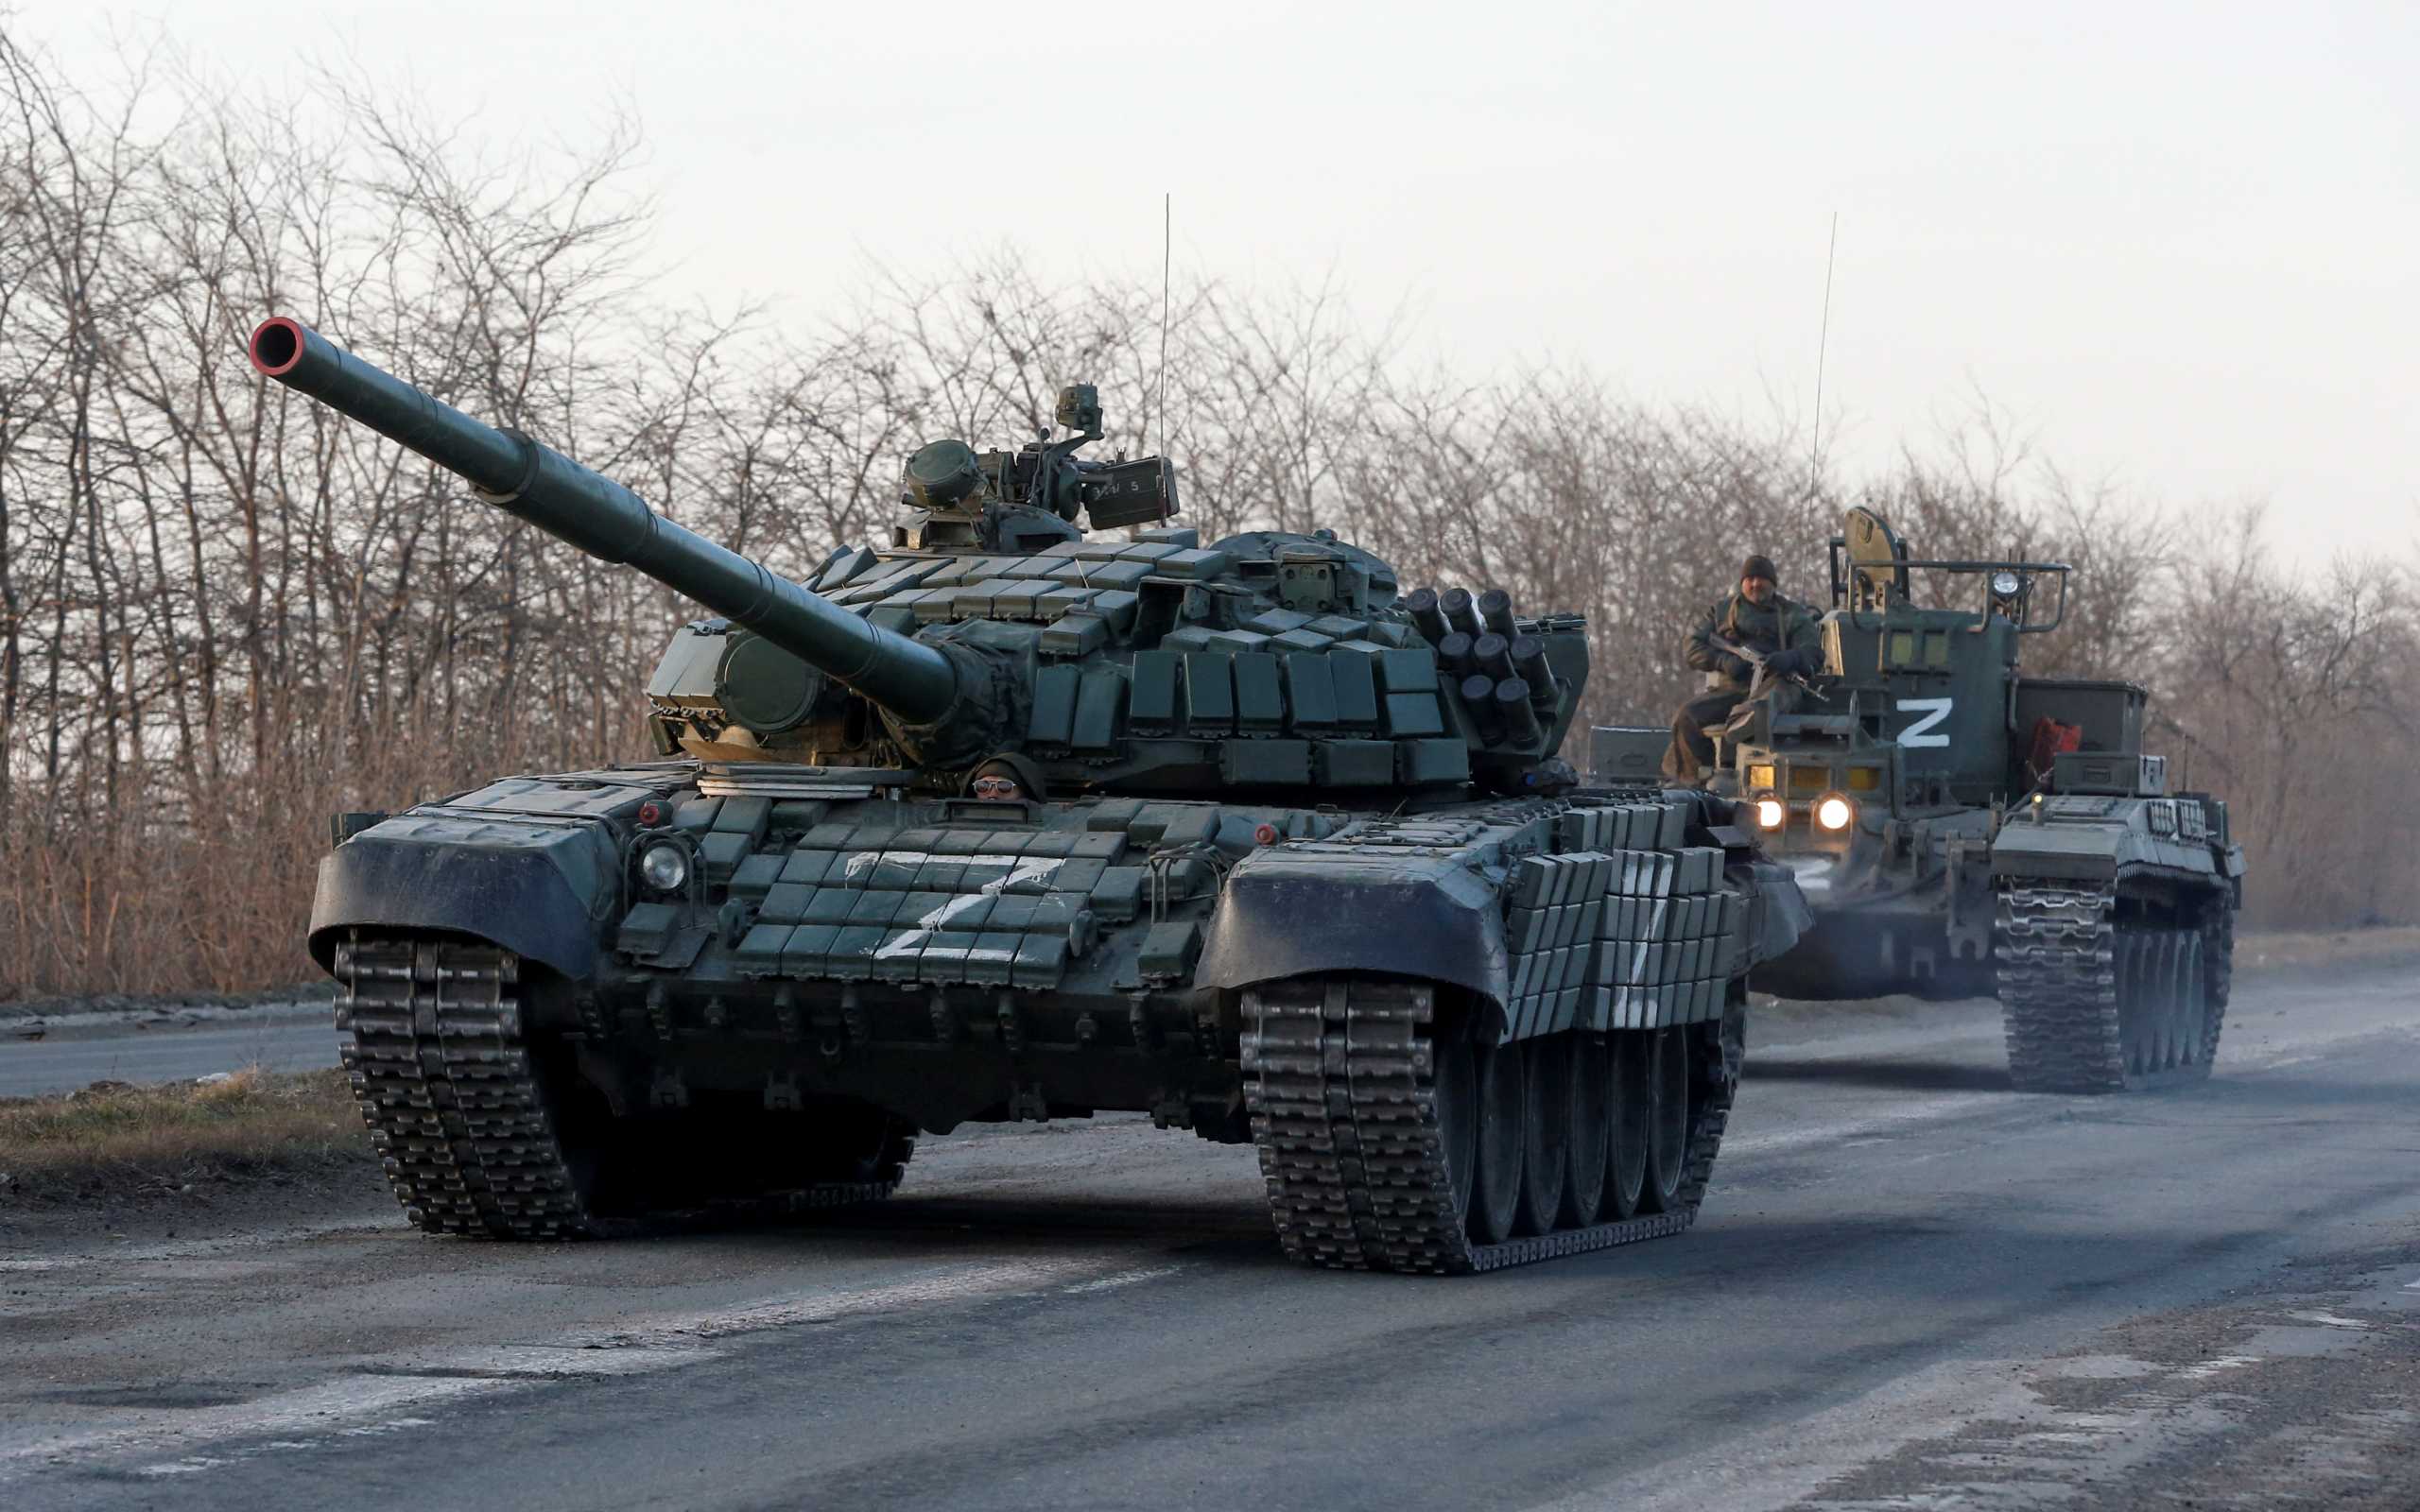 Πόλεμος στην Ουκρανία – ΝΑΤΟ: Οι Ρώσοι χρειάζονται 1 μήνα για να ελέγξουν πλήρως το Ντονμπάς